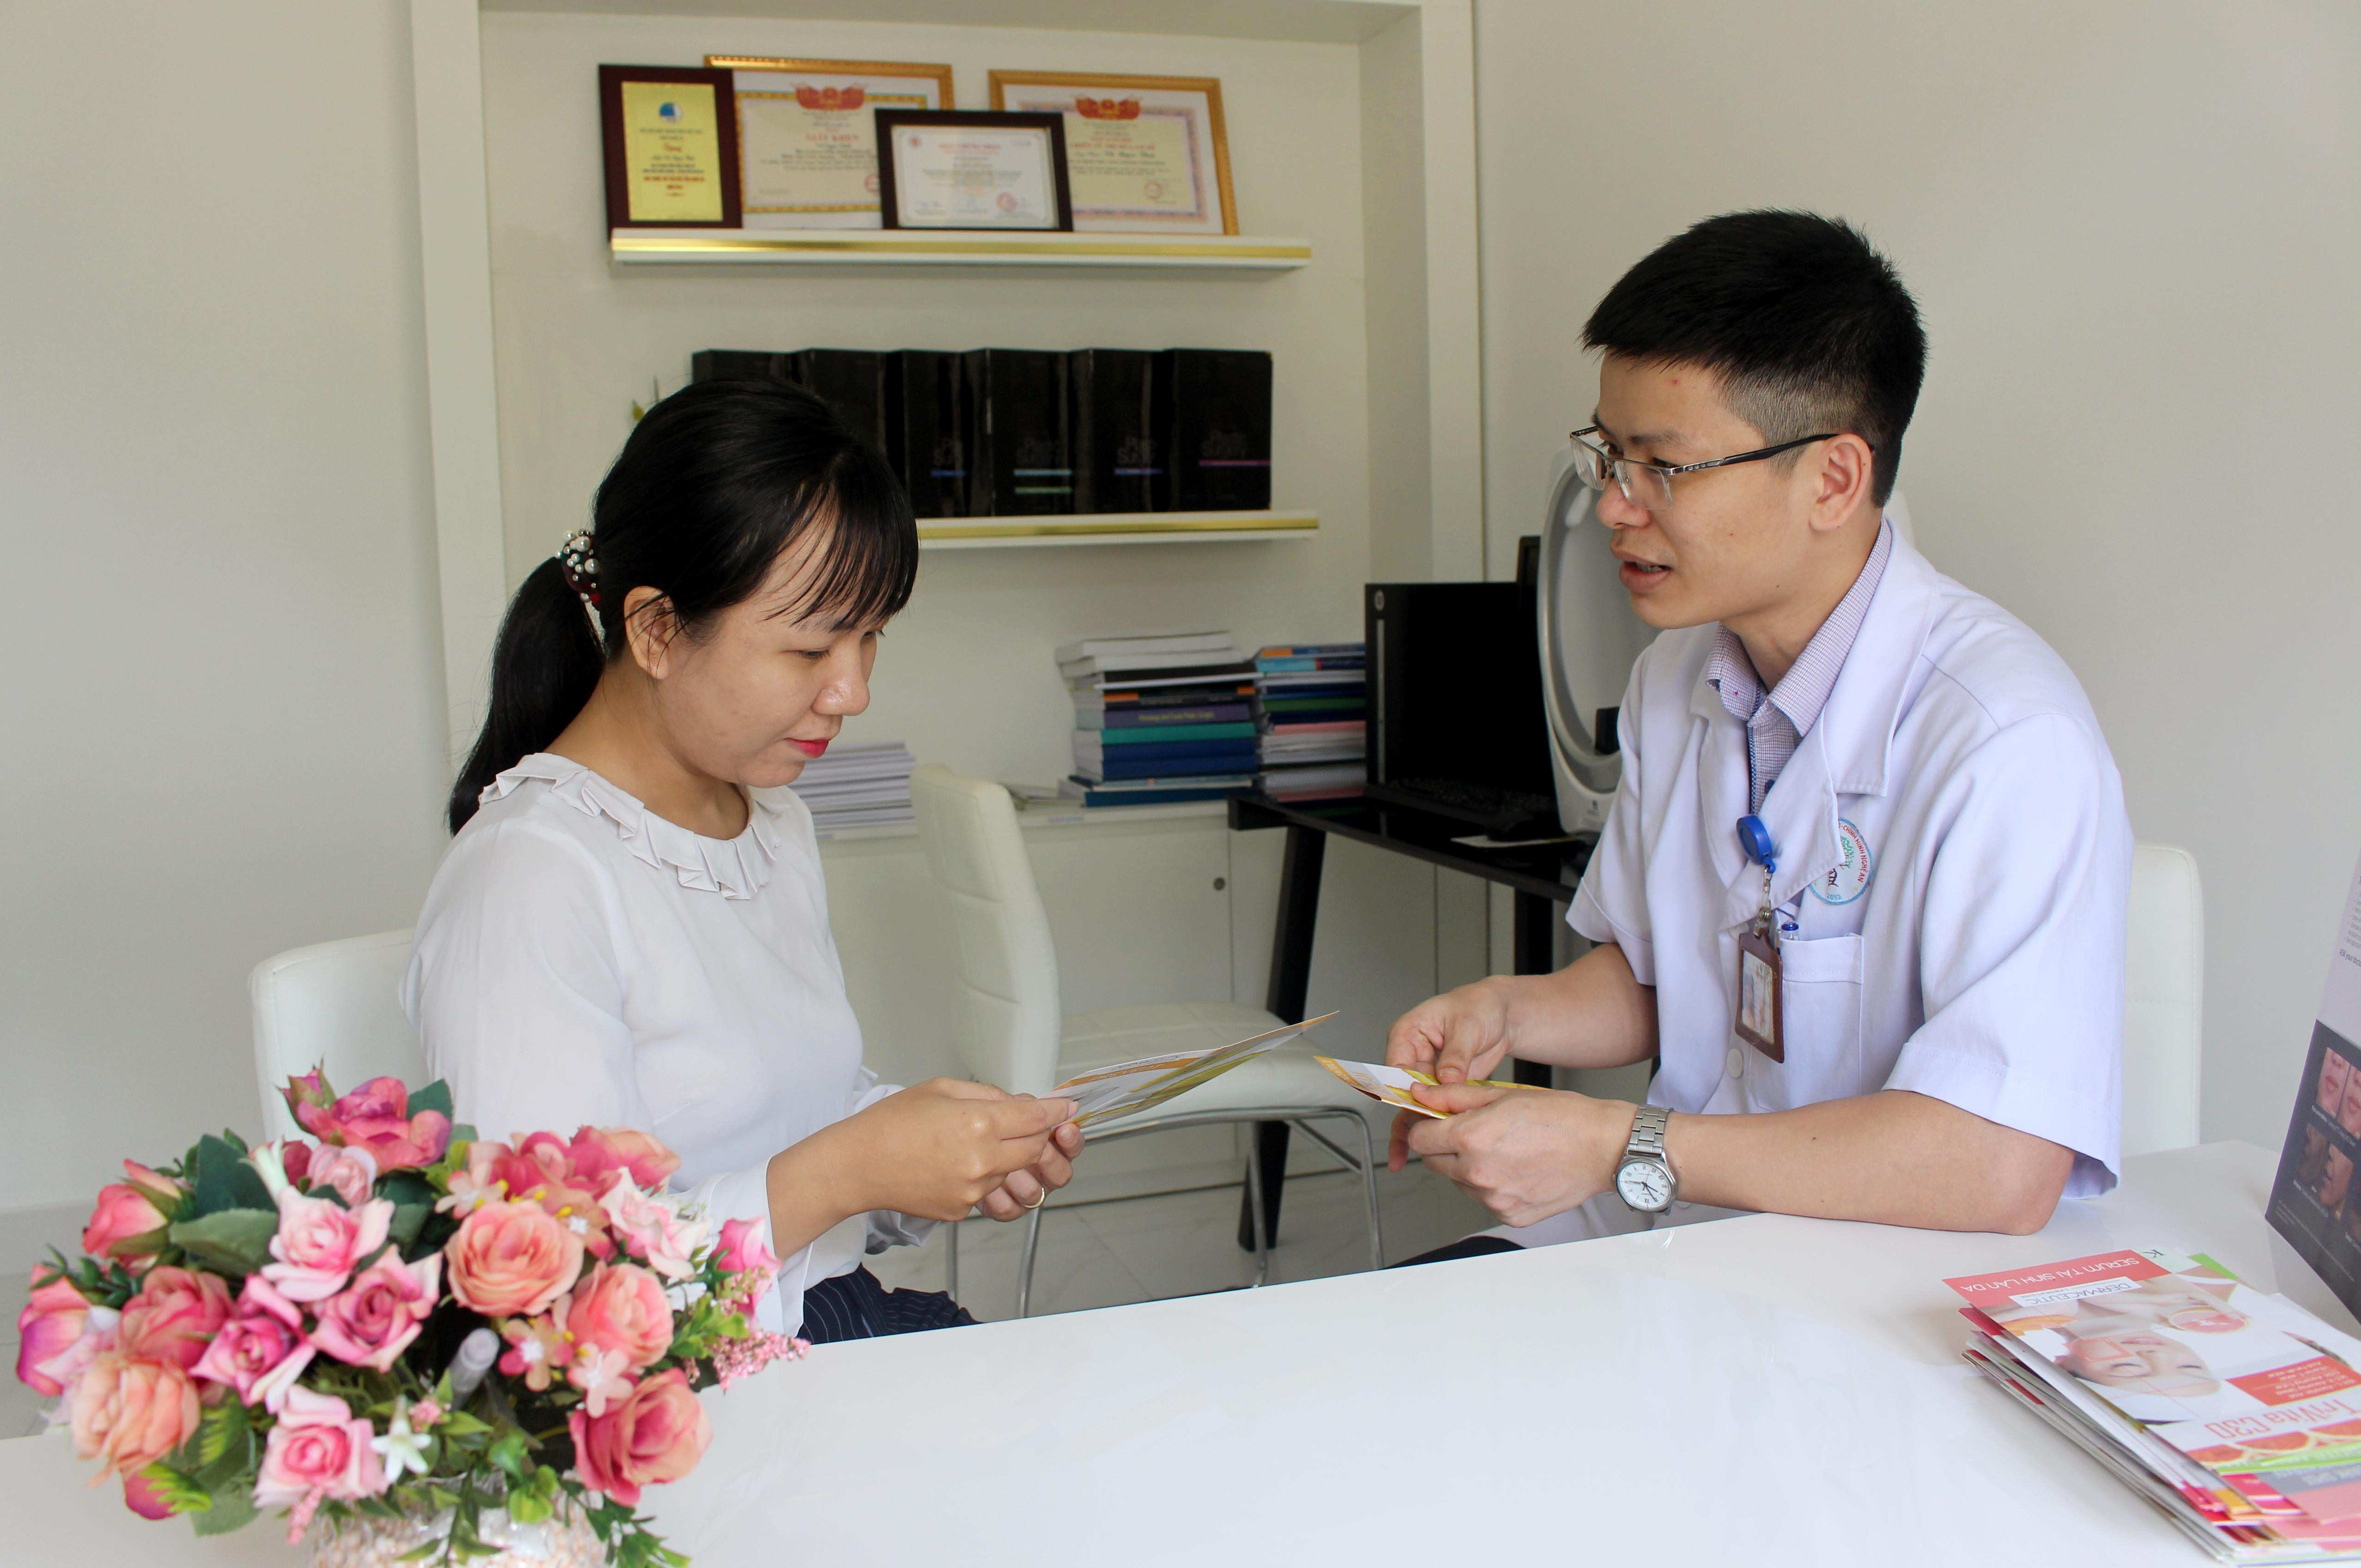 Bác sỹ Khoa phẫu thuật tạo hình thẩm mỹ, Bệnh viện Chấn thương chỉnh hình Nghệ An thăm khám, tư vấn cho bệnh nhân, ảnh Đinh Nguyệt